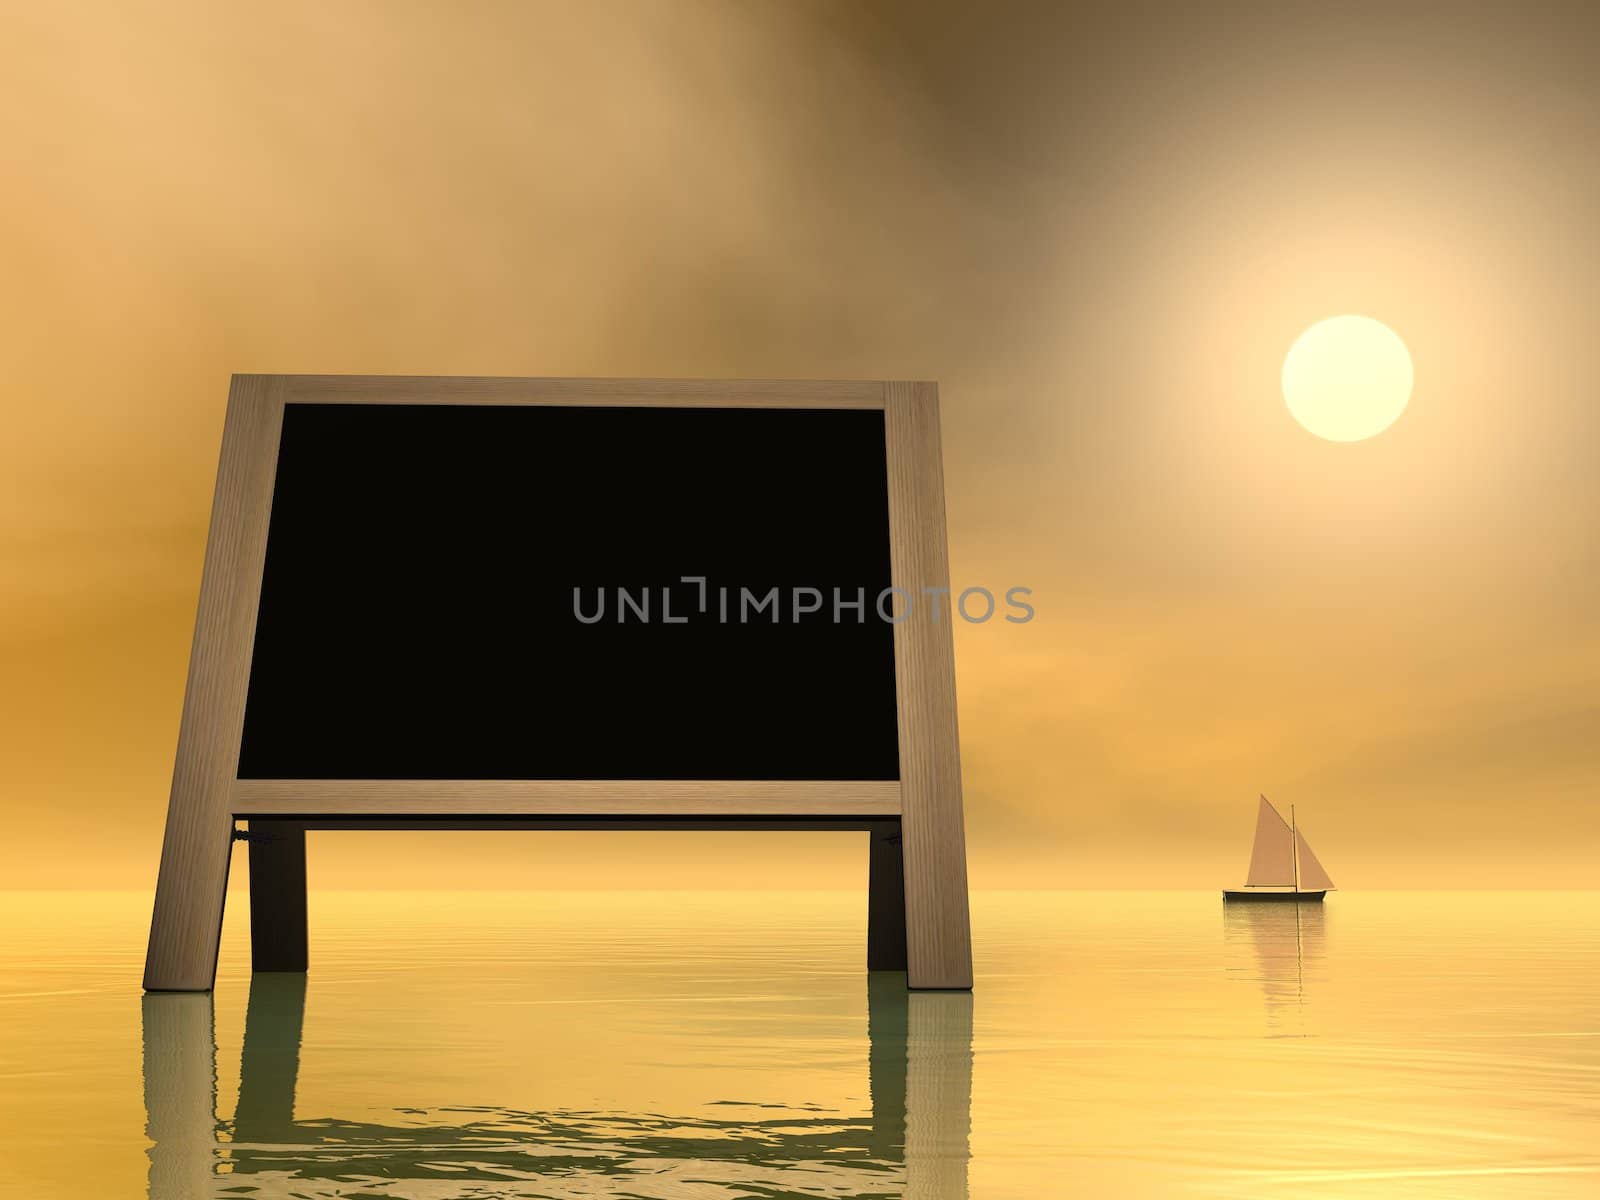 Sunset message - 3D render by Elenaphotos21